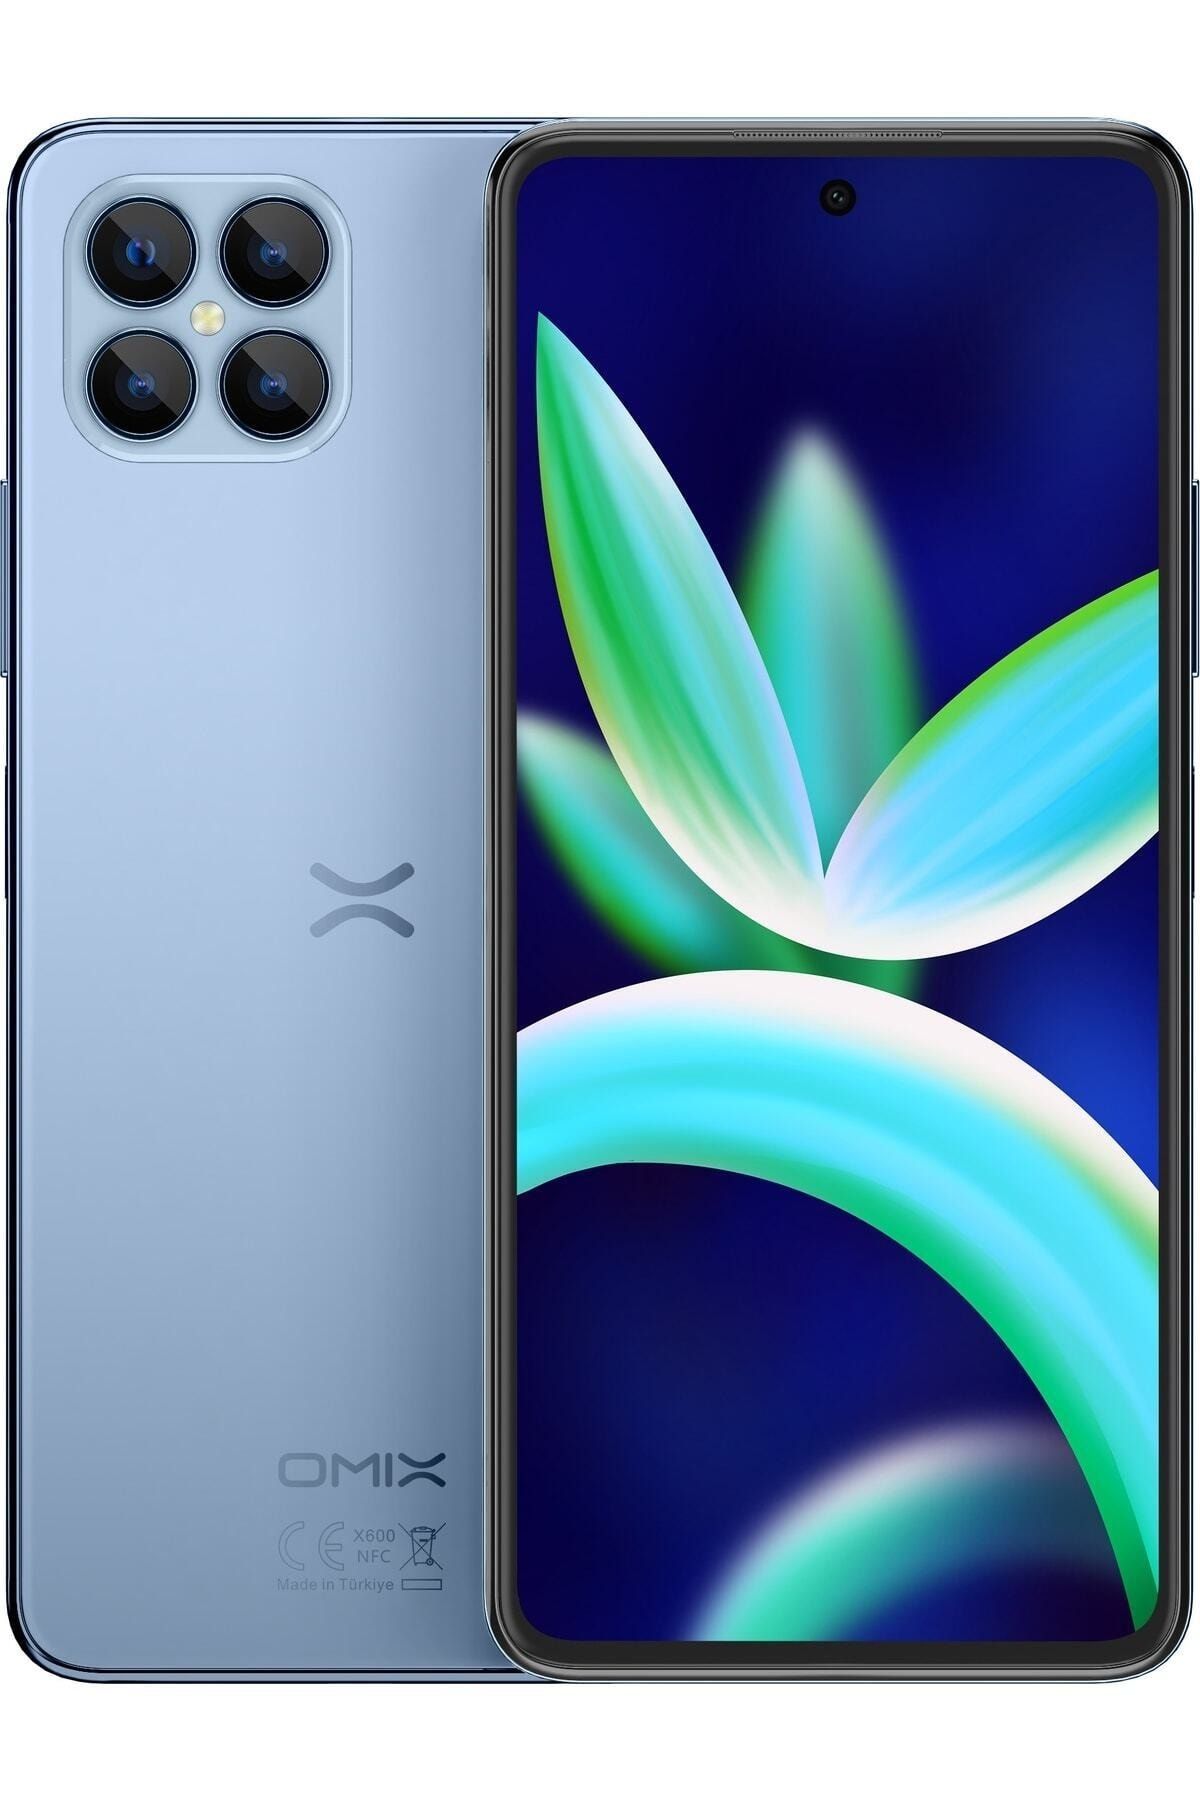 omix X600 4 Ram 64 Gb Mavi Renk Cep Telefonu Türkiye Garantili